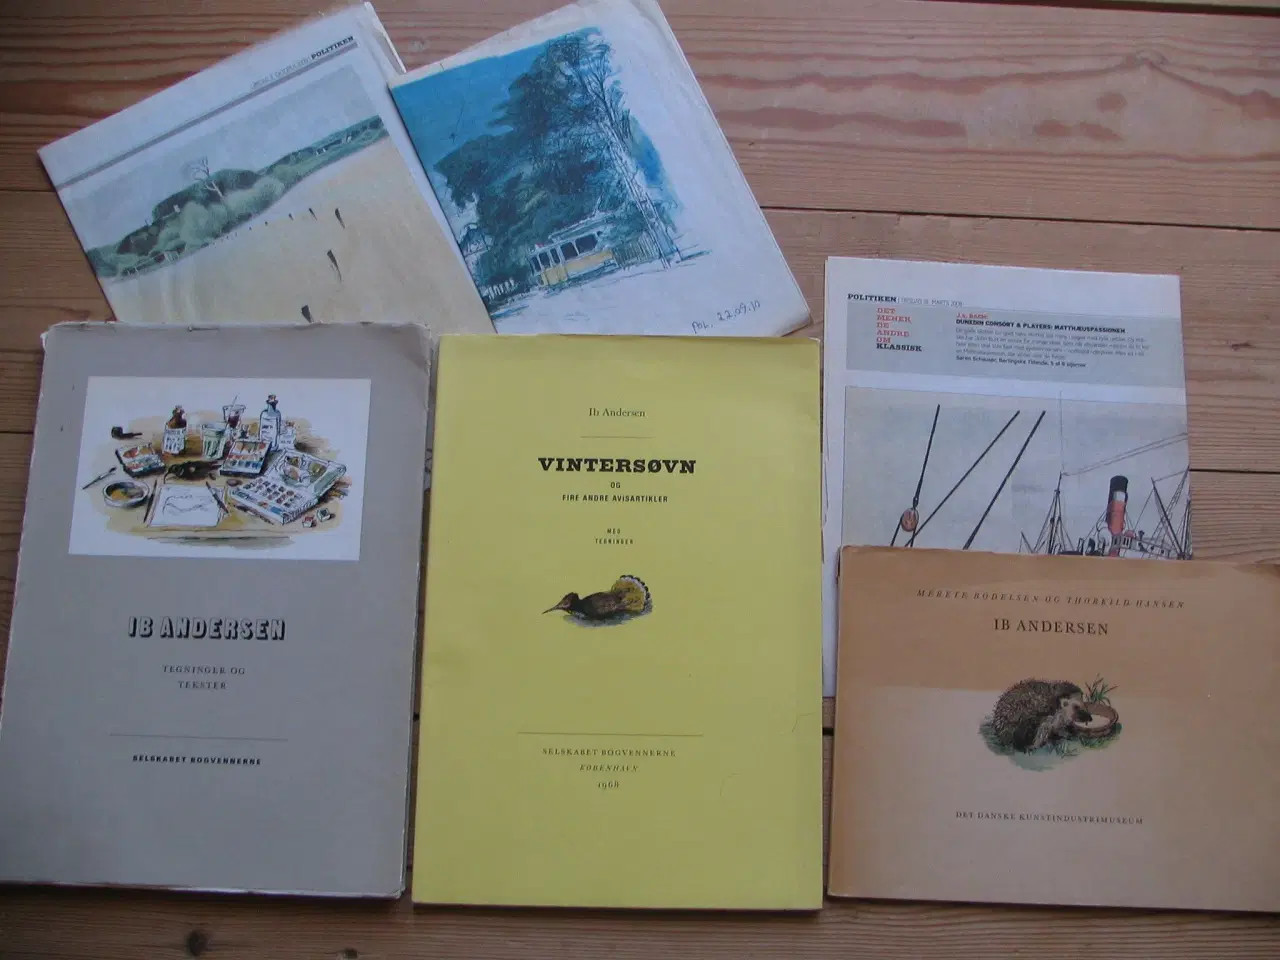 Billede 1 - Ib Andersen (1907-1969), 3 bøger om og af IA